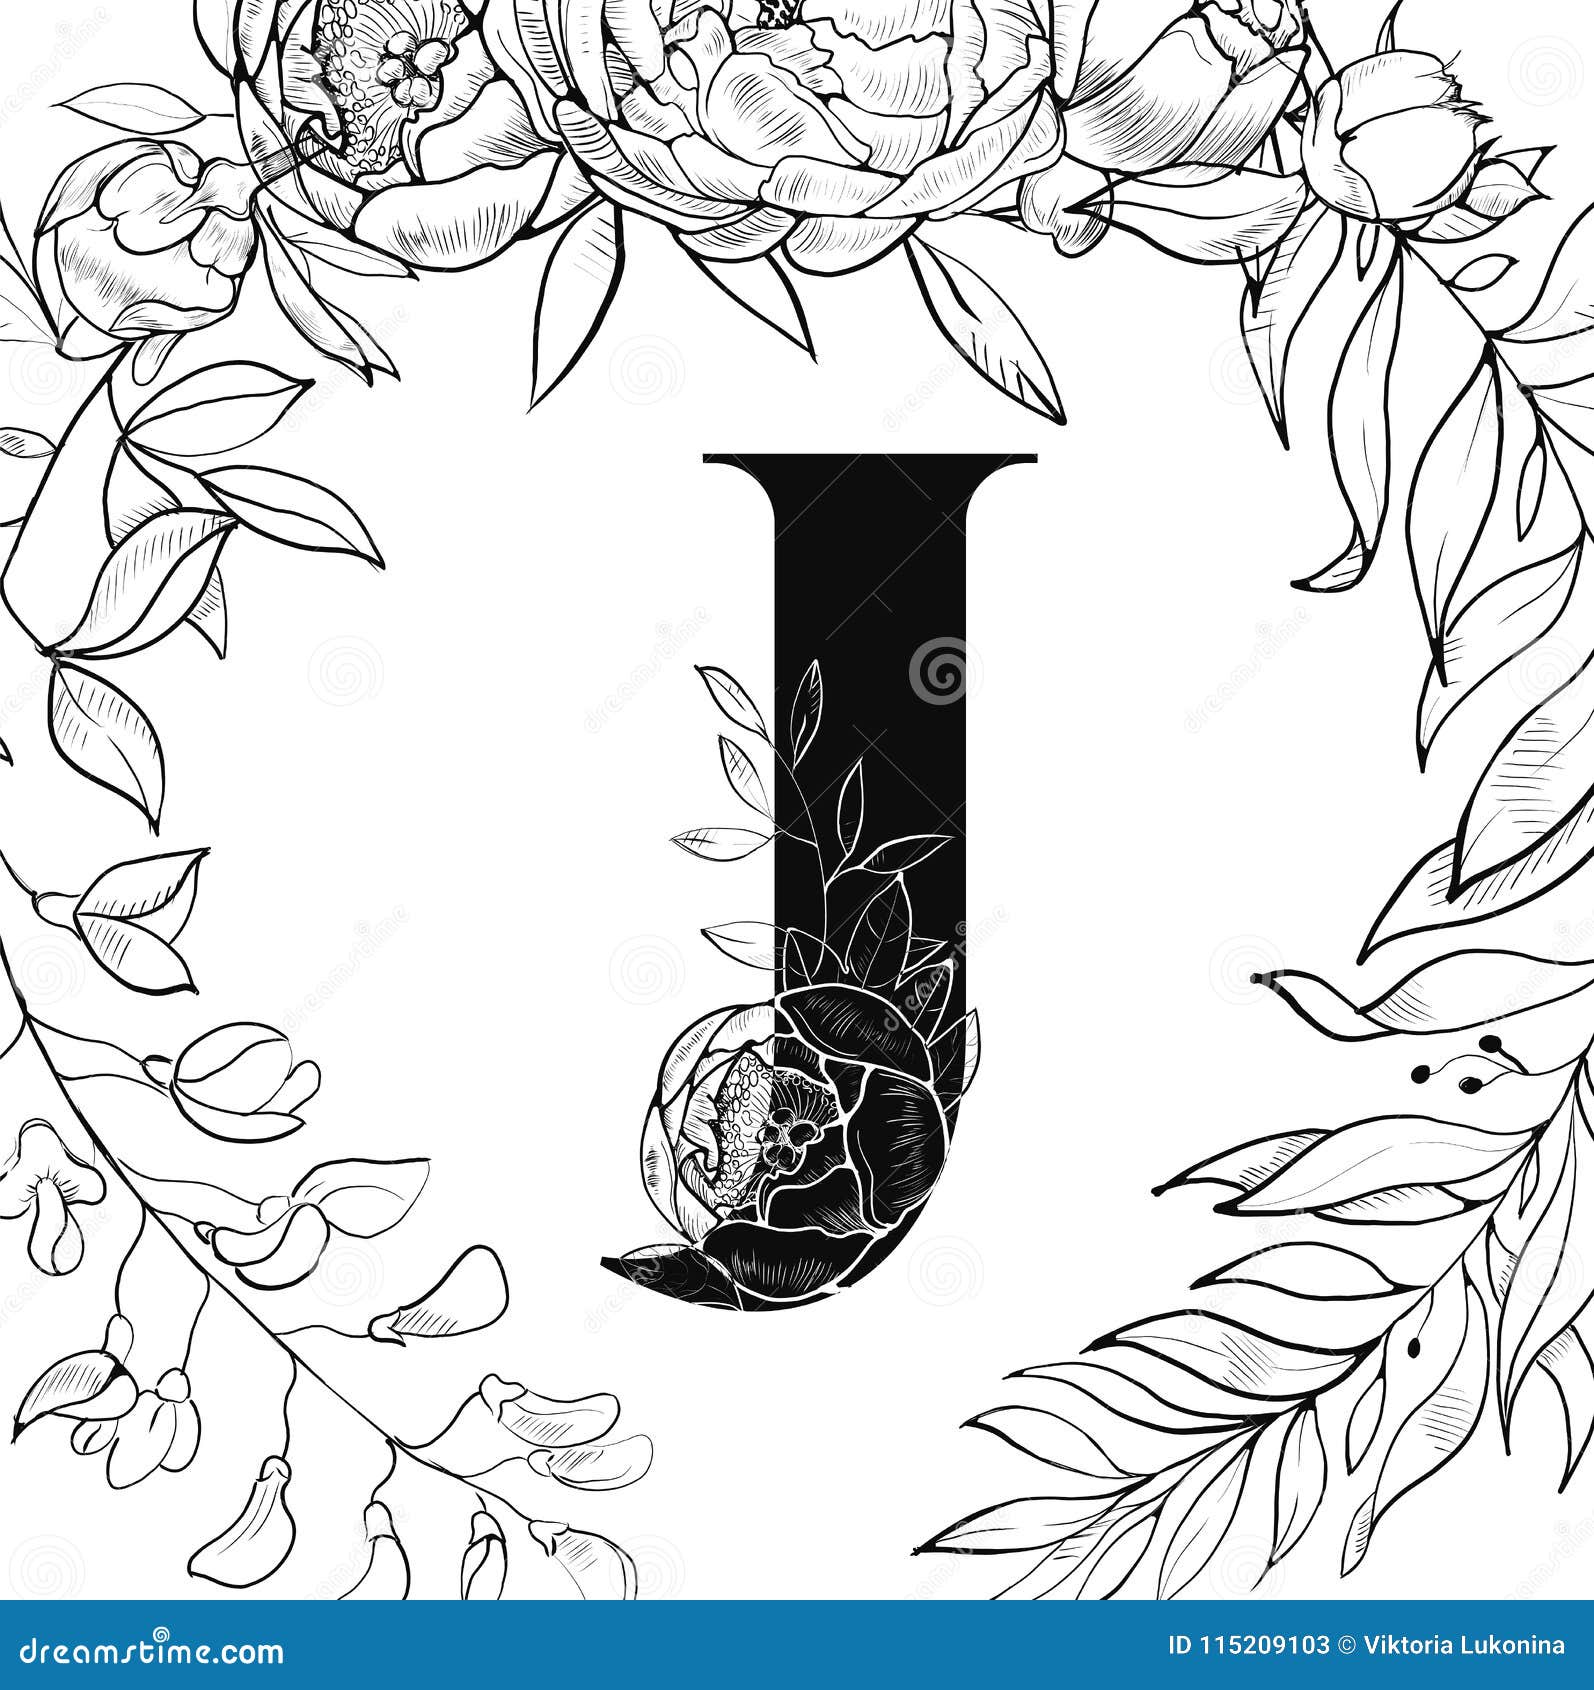 Flower Alphabet Letter J Pattern Stock Vector Illustration Of Sign